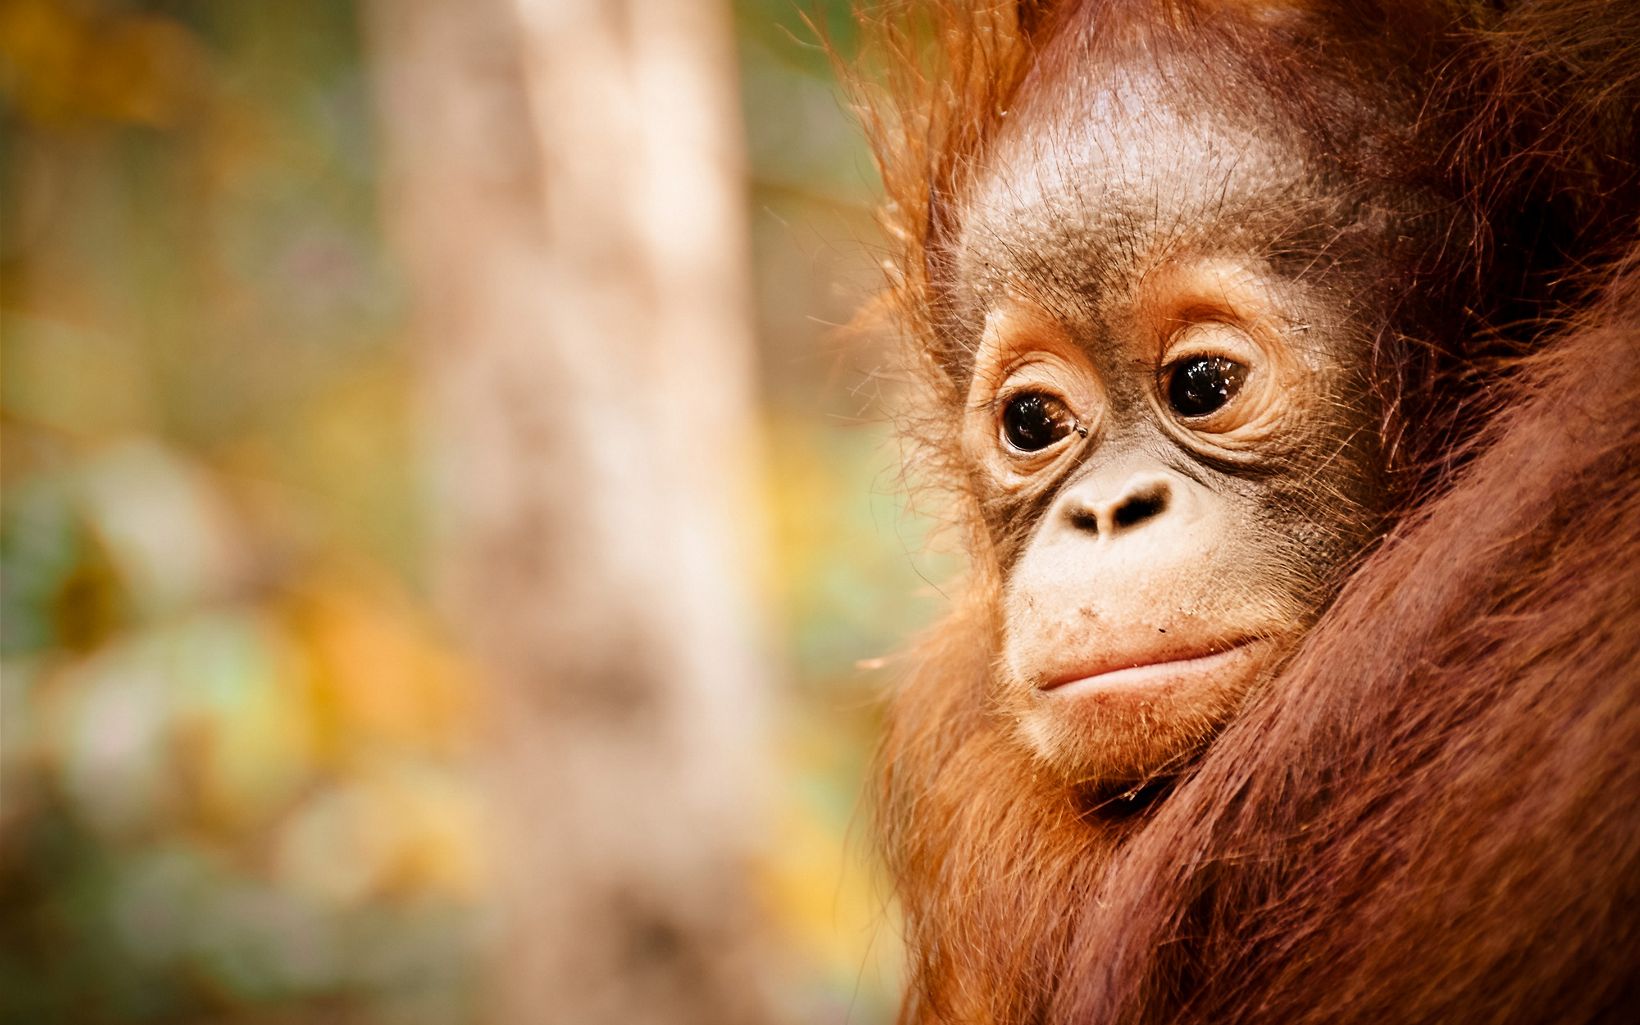 closeup of a baby orangutan face